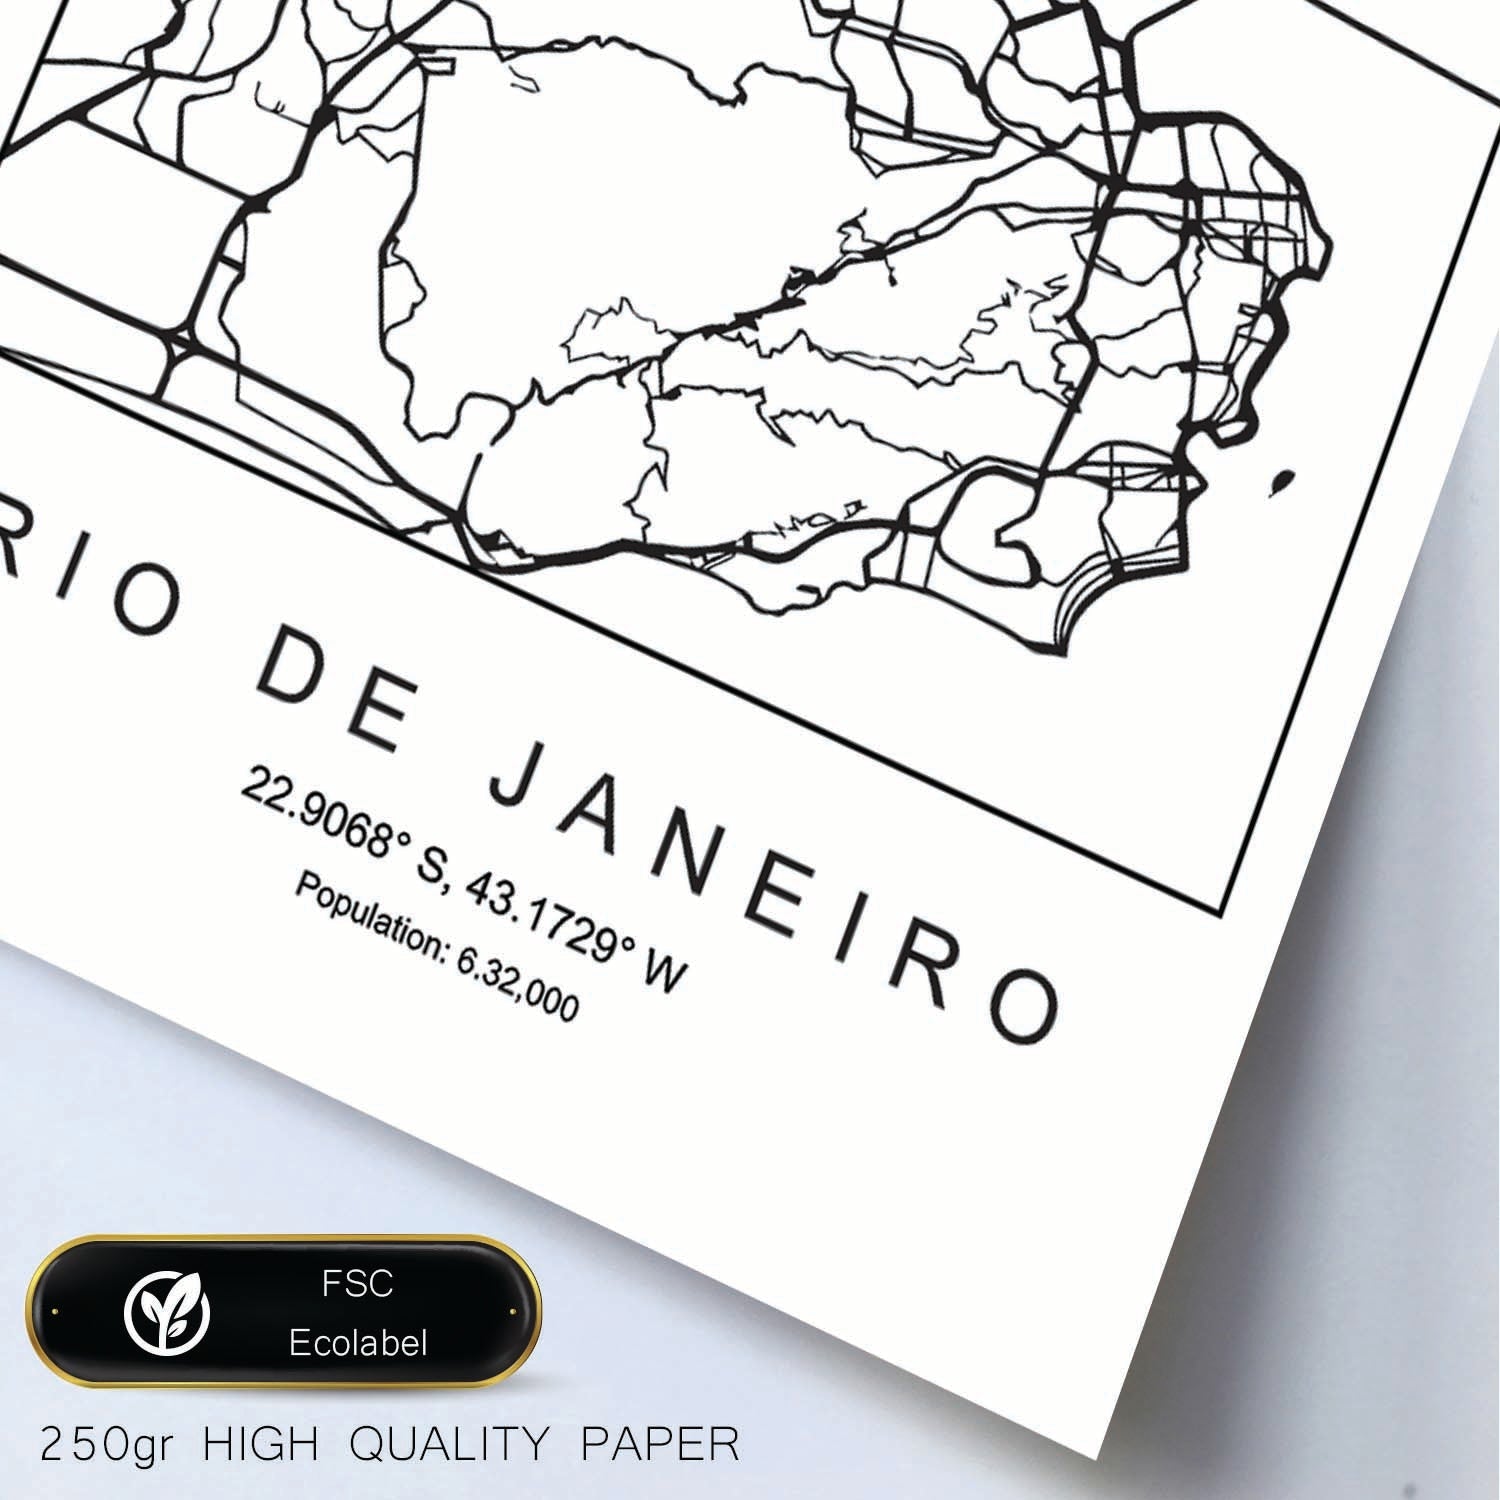 Lámina mapa de la ciudad Rio de janeiro estilo nordico en blanco y negro.-Artwork-Nacnic-Nacnic Estudio SL